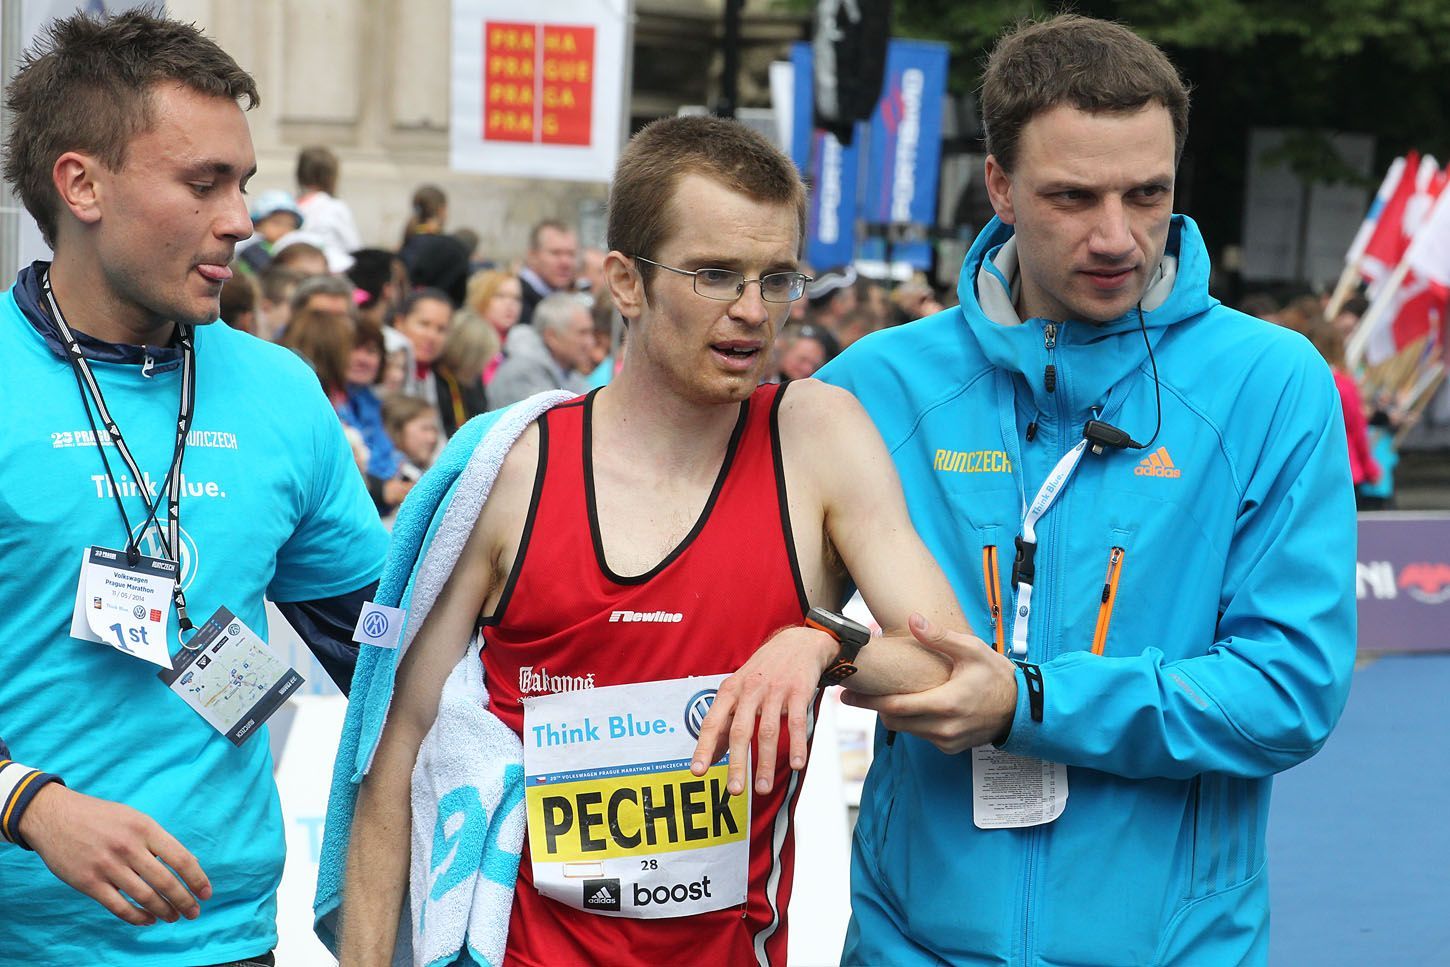 Pražský maraton 2014 (Pechek)